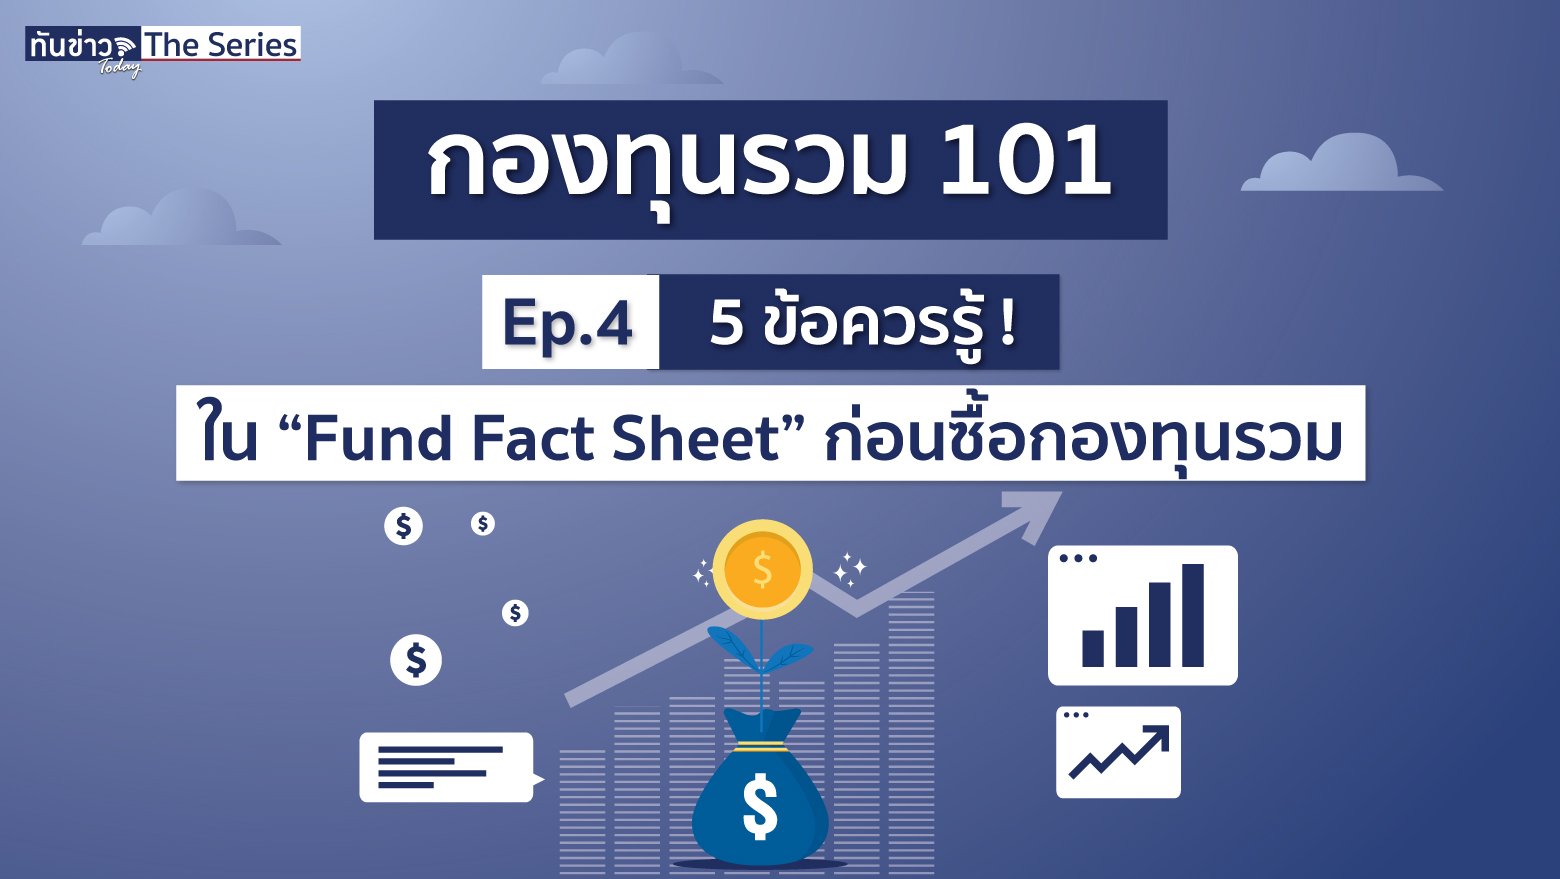 5 ข้อต้องรู้ ! ใน “Fund Fact Sheet” ก่อนซื้อกองทุนรวม